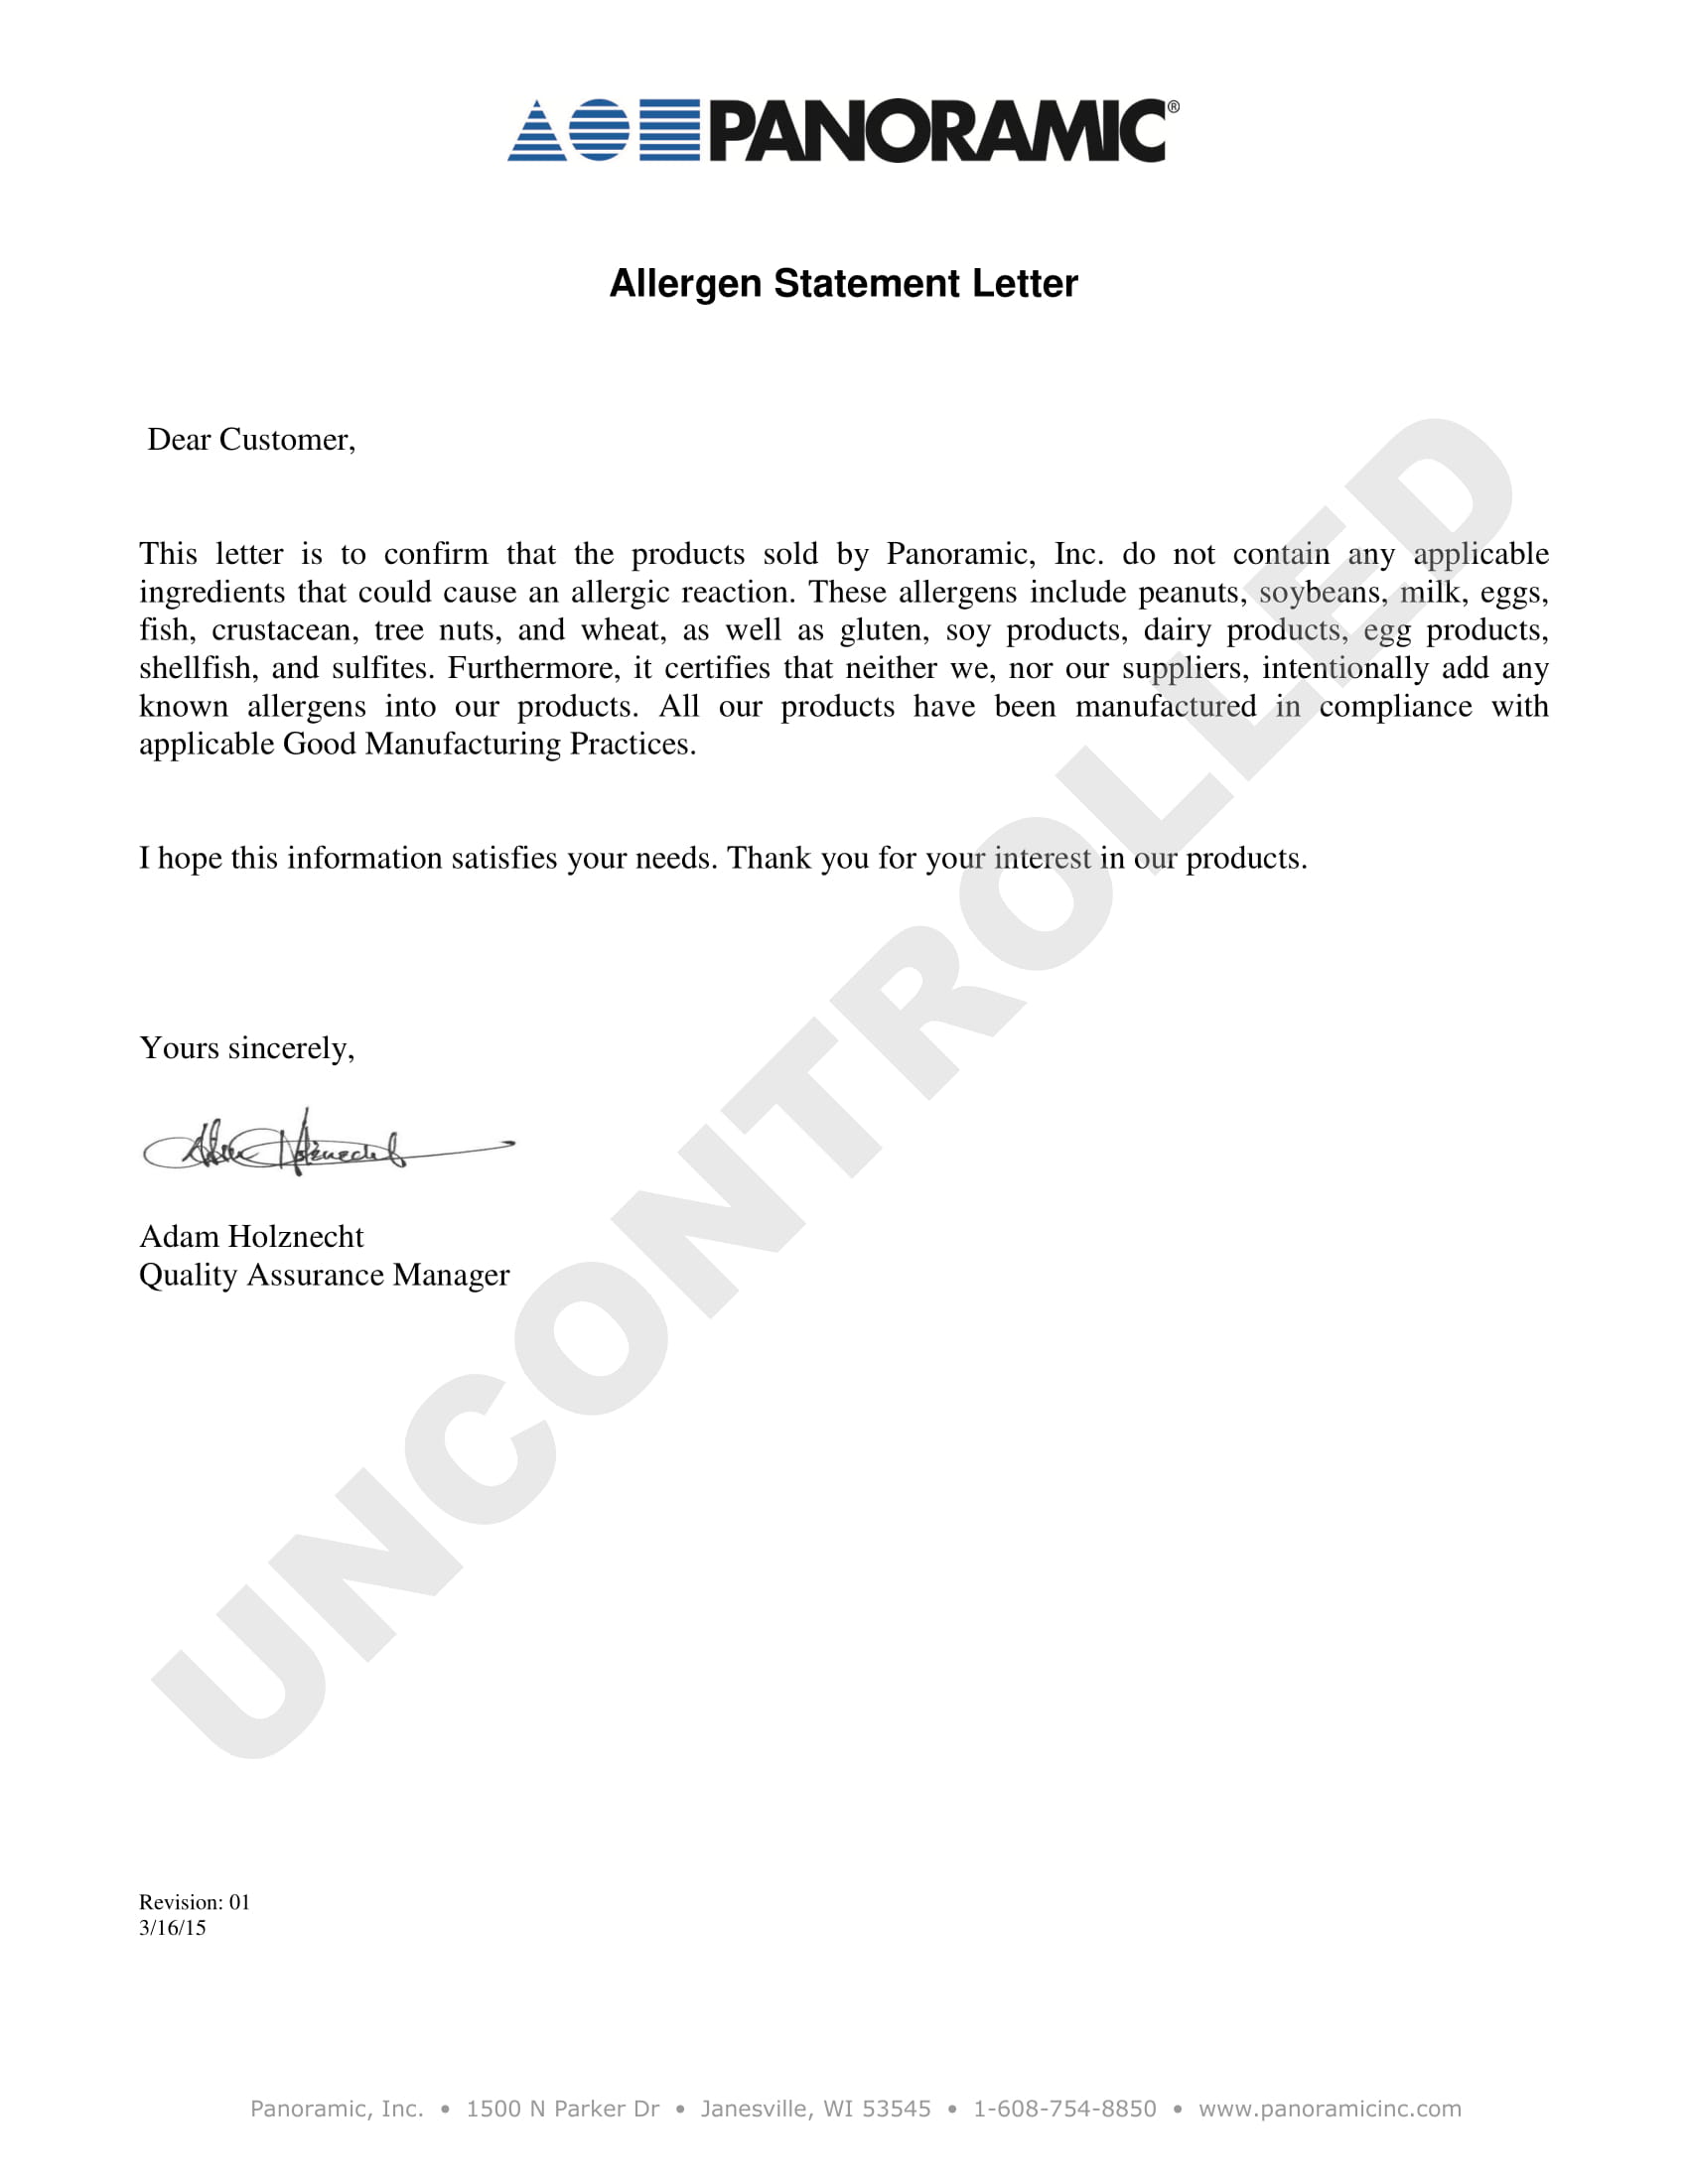 allergen statement letter example